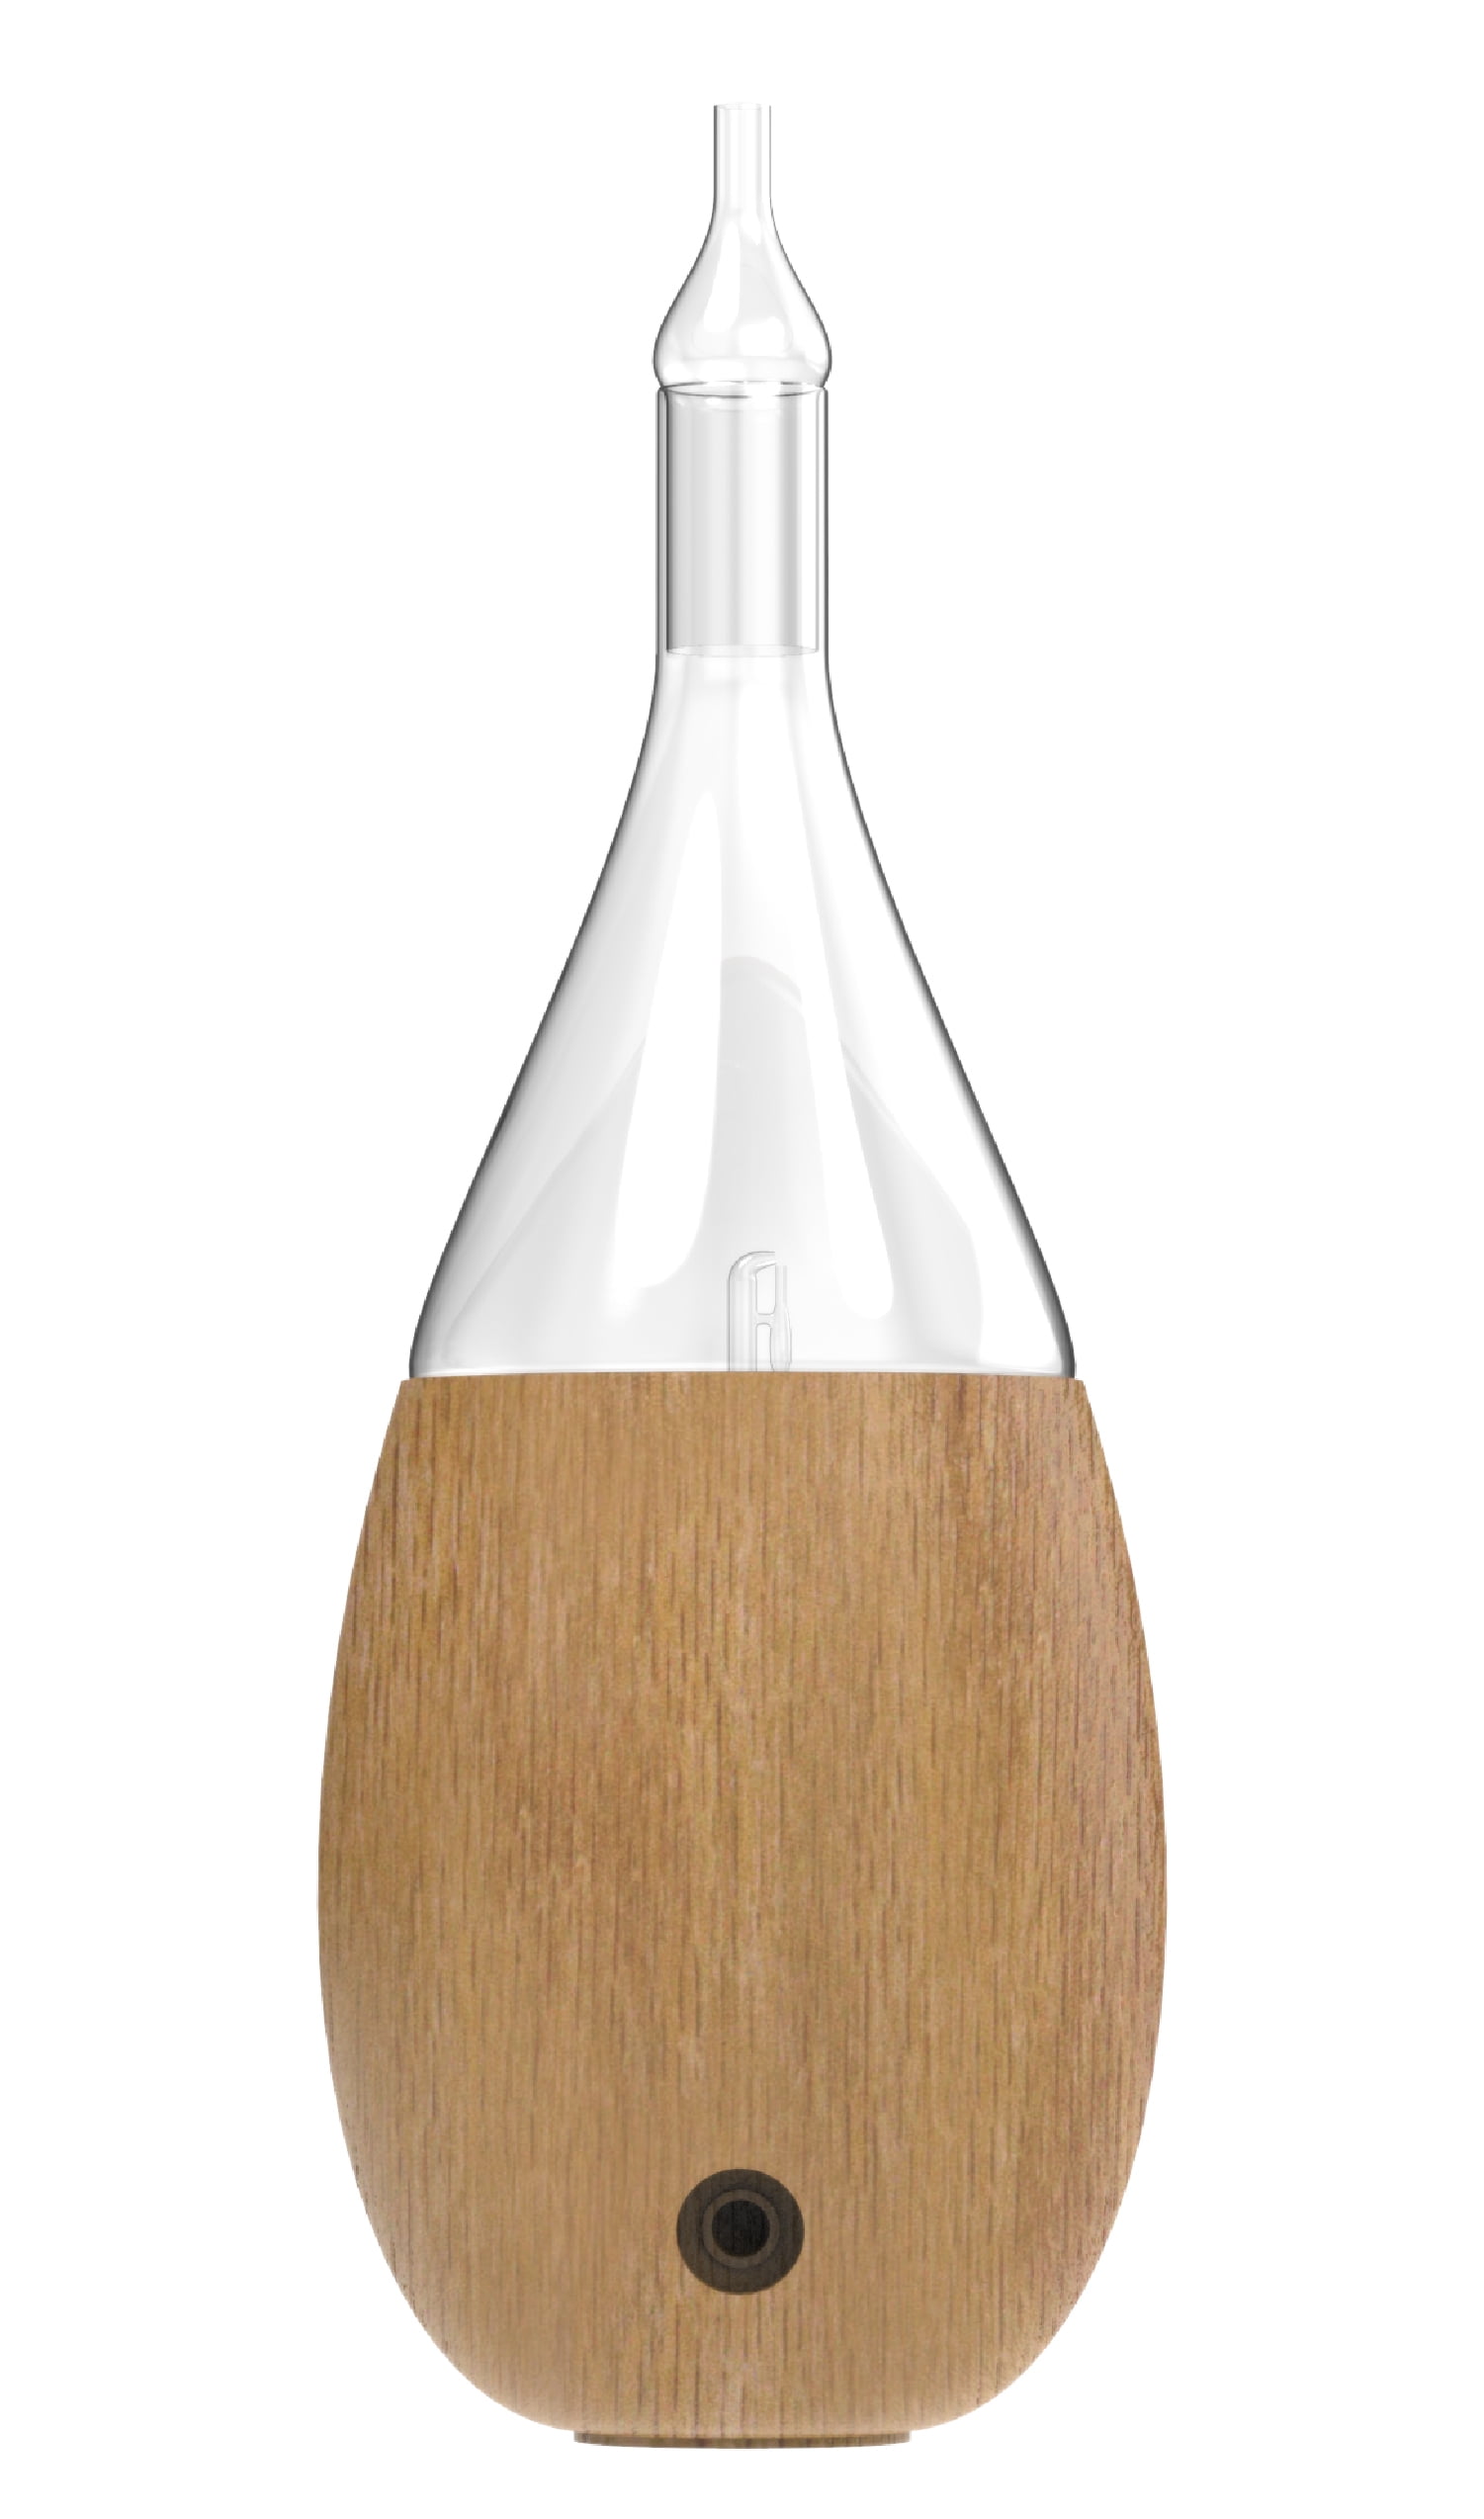 Fresh Linen - 15ml Fragrance Oil Bottle – Diffuser Humidifier